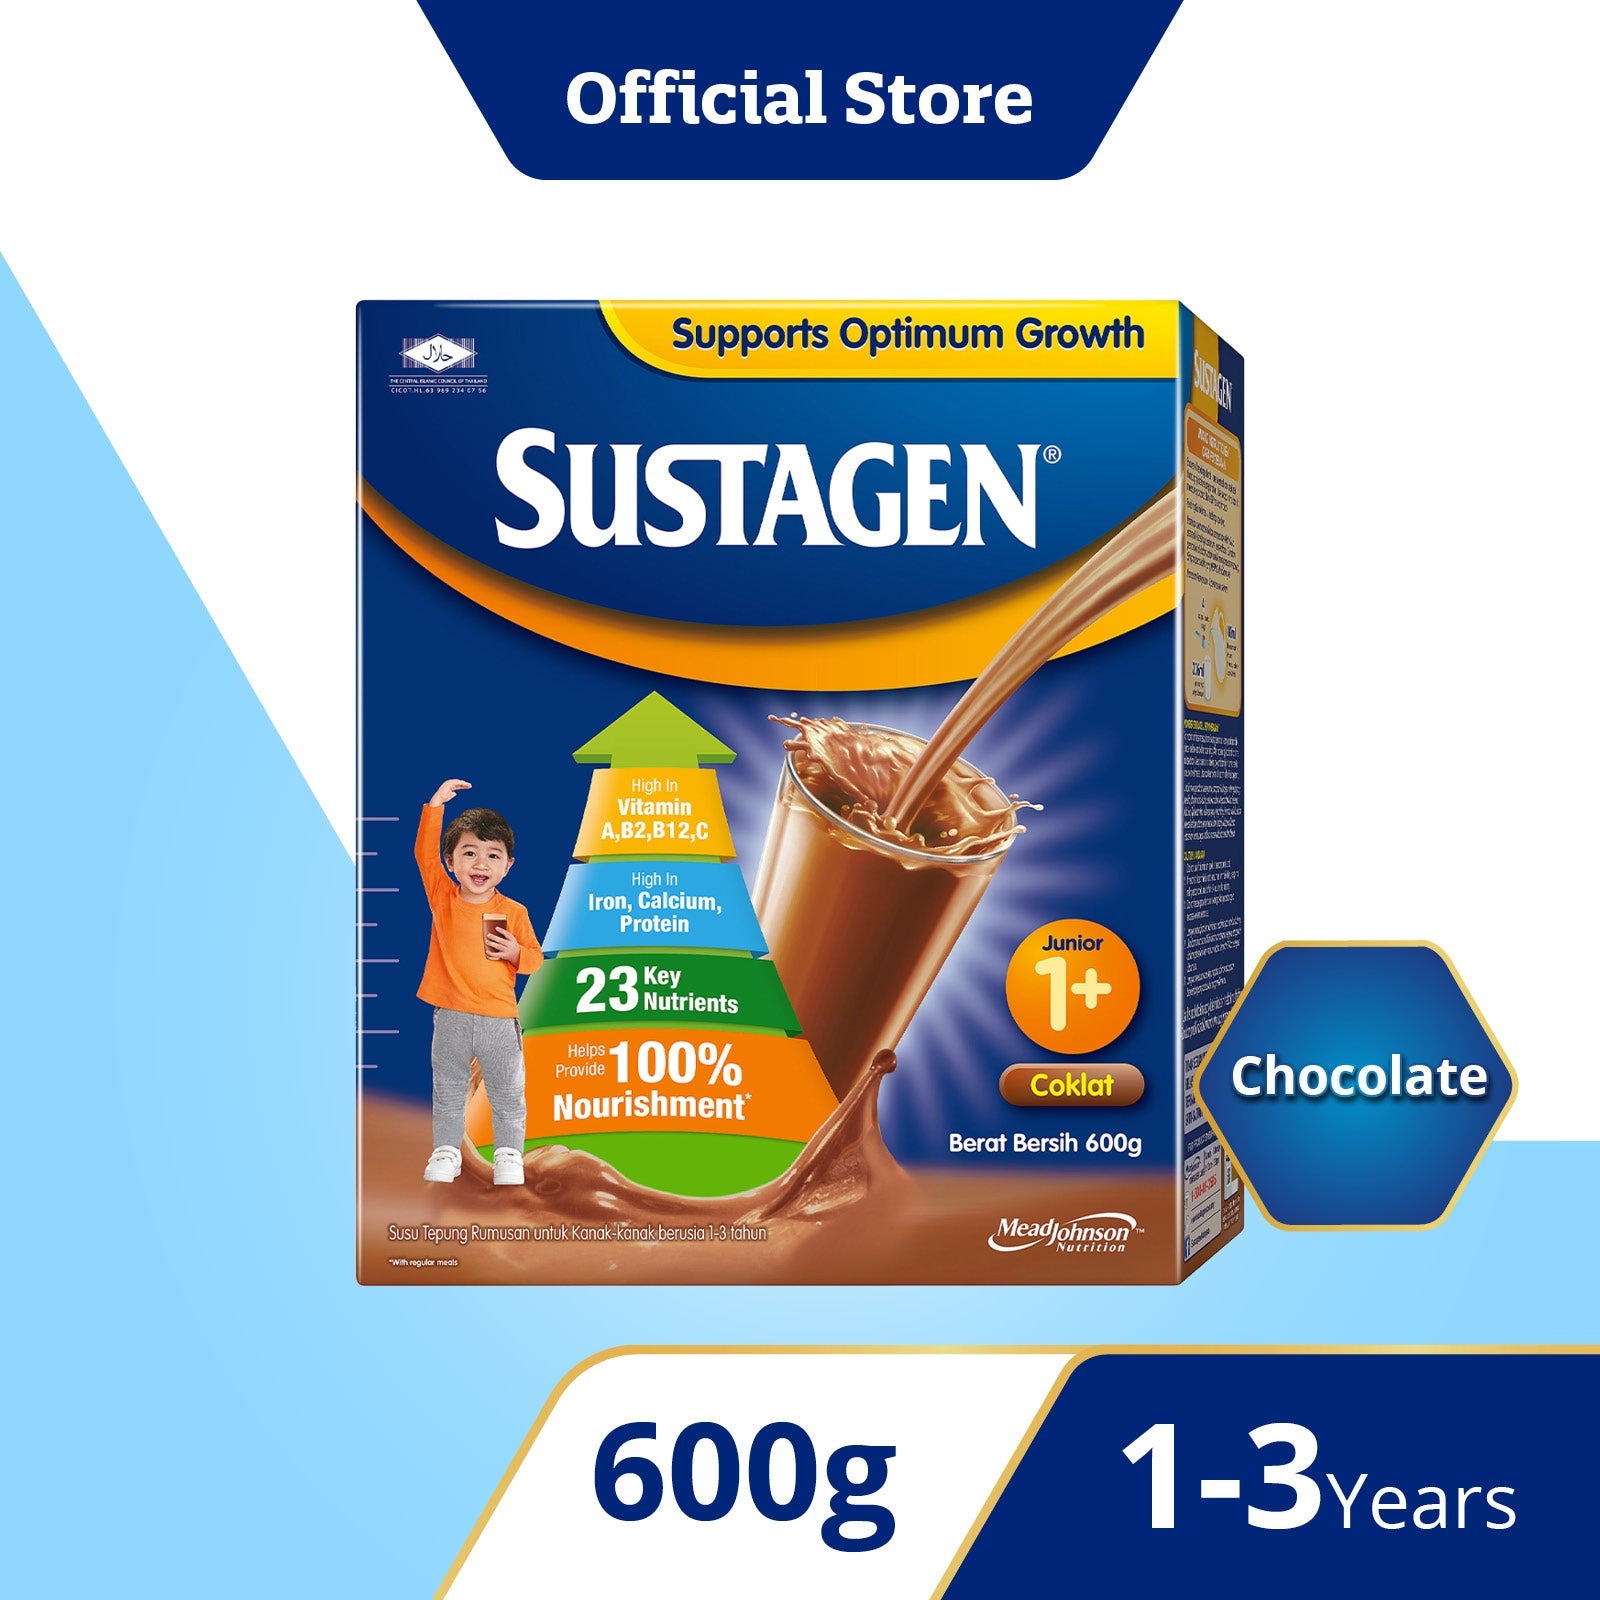 Sustagen Junior 1+, Chocolate, 600g